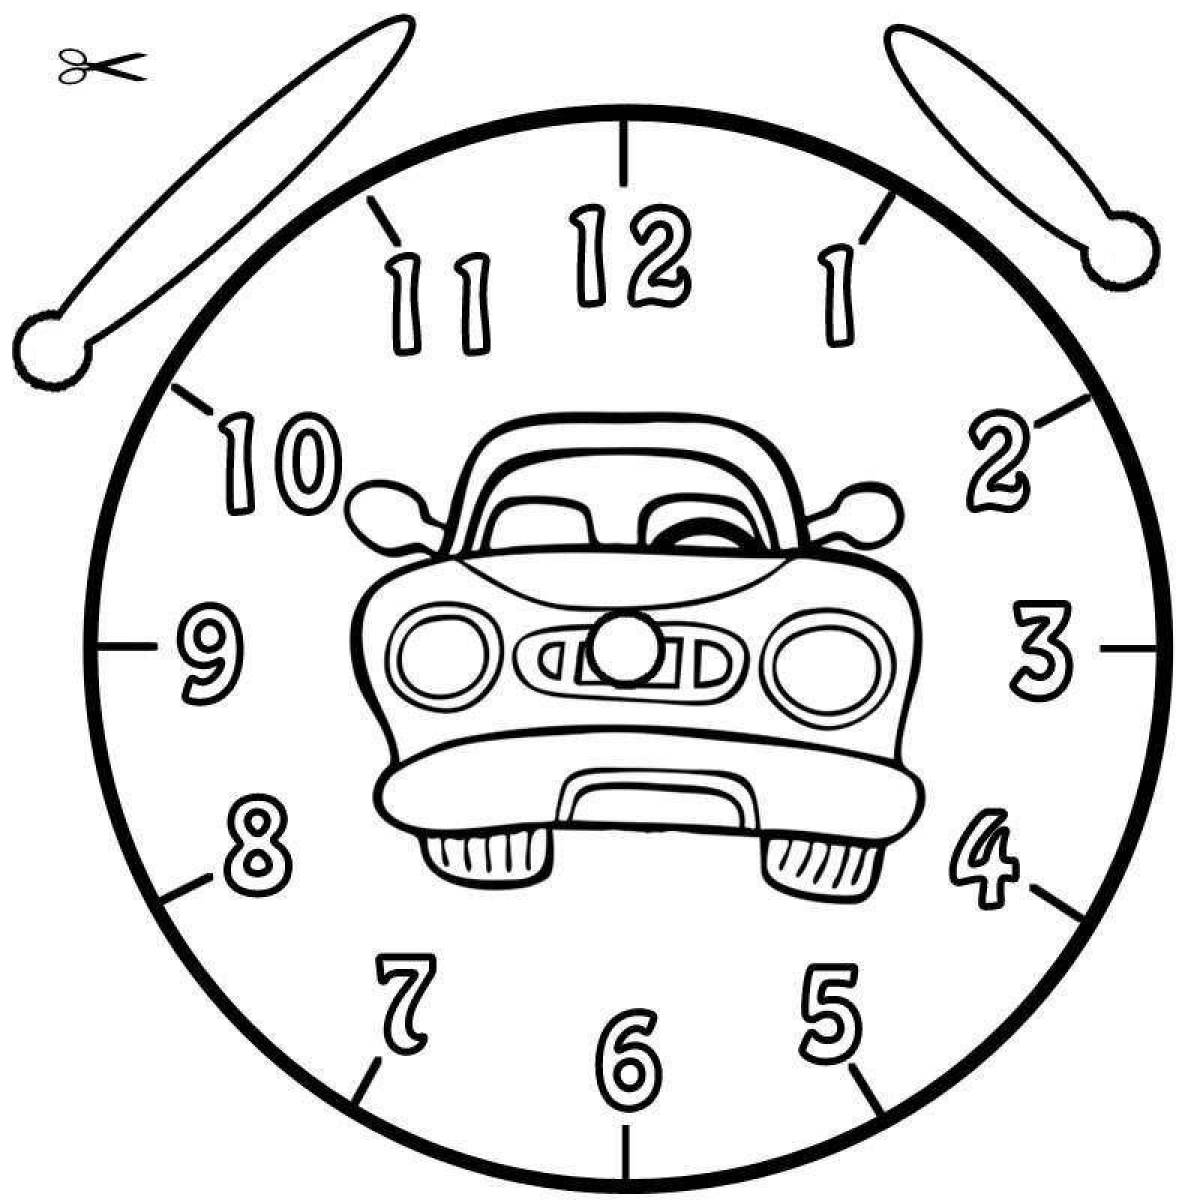 Раскраски часов для детей. Часы раскраска. Часы раскраска для детей. Часы для раскрашивания для детей. Часы раскраски для дошкольников.